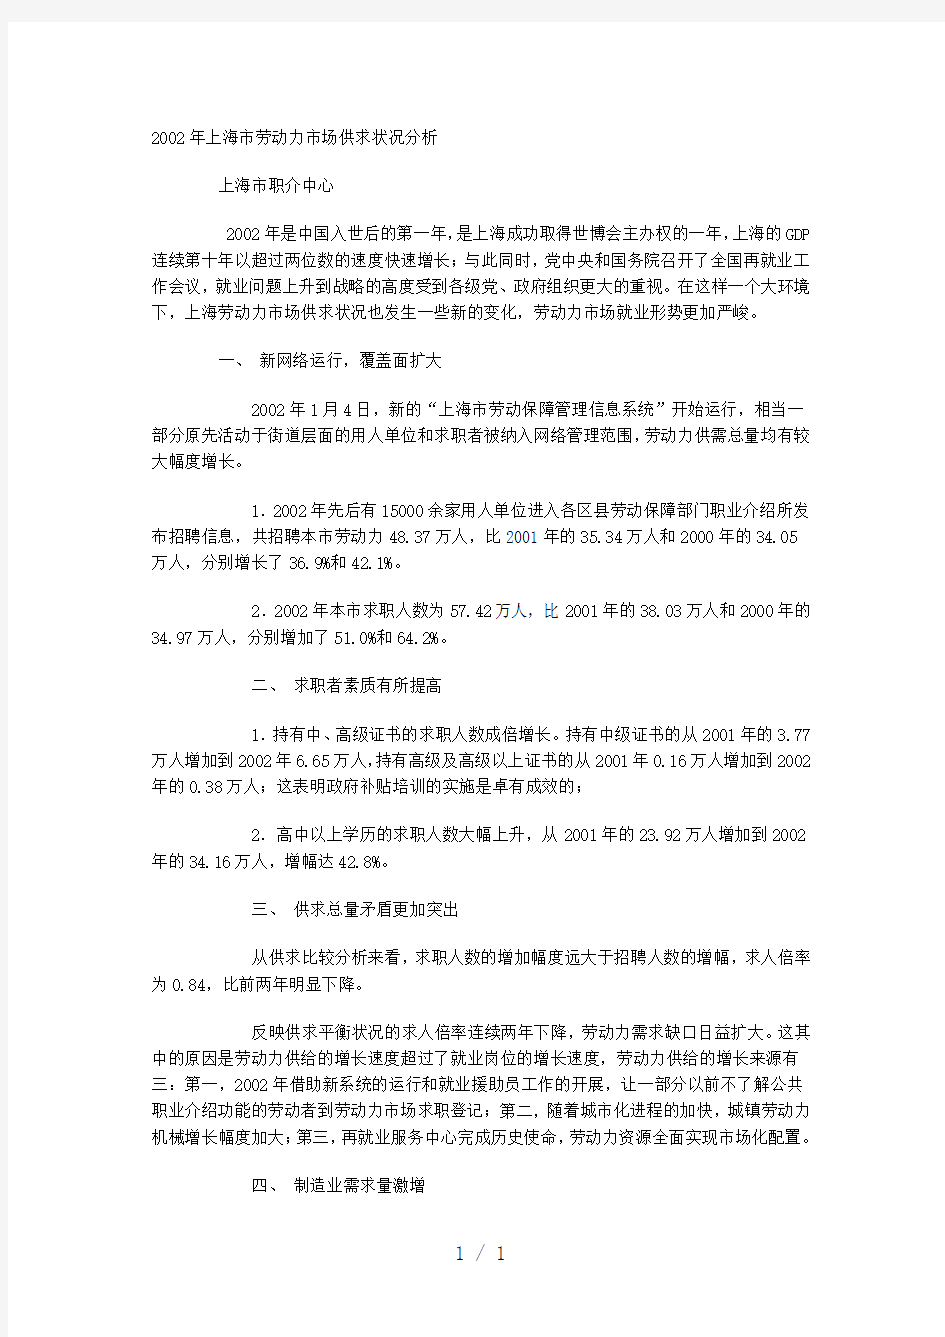 上海市劳动力市场供求状况分析